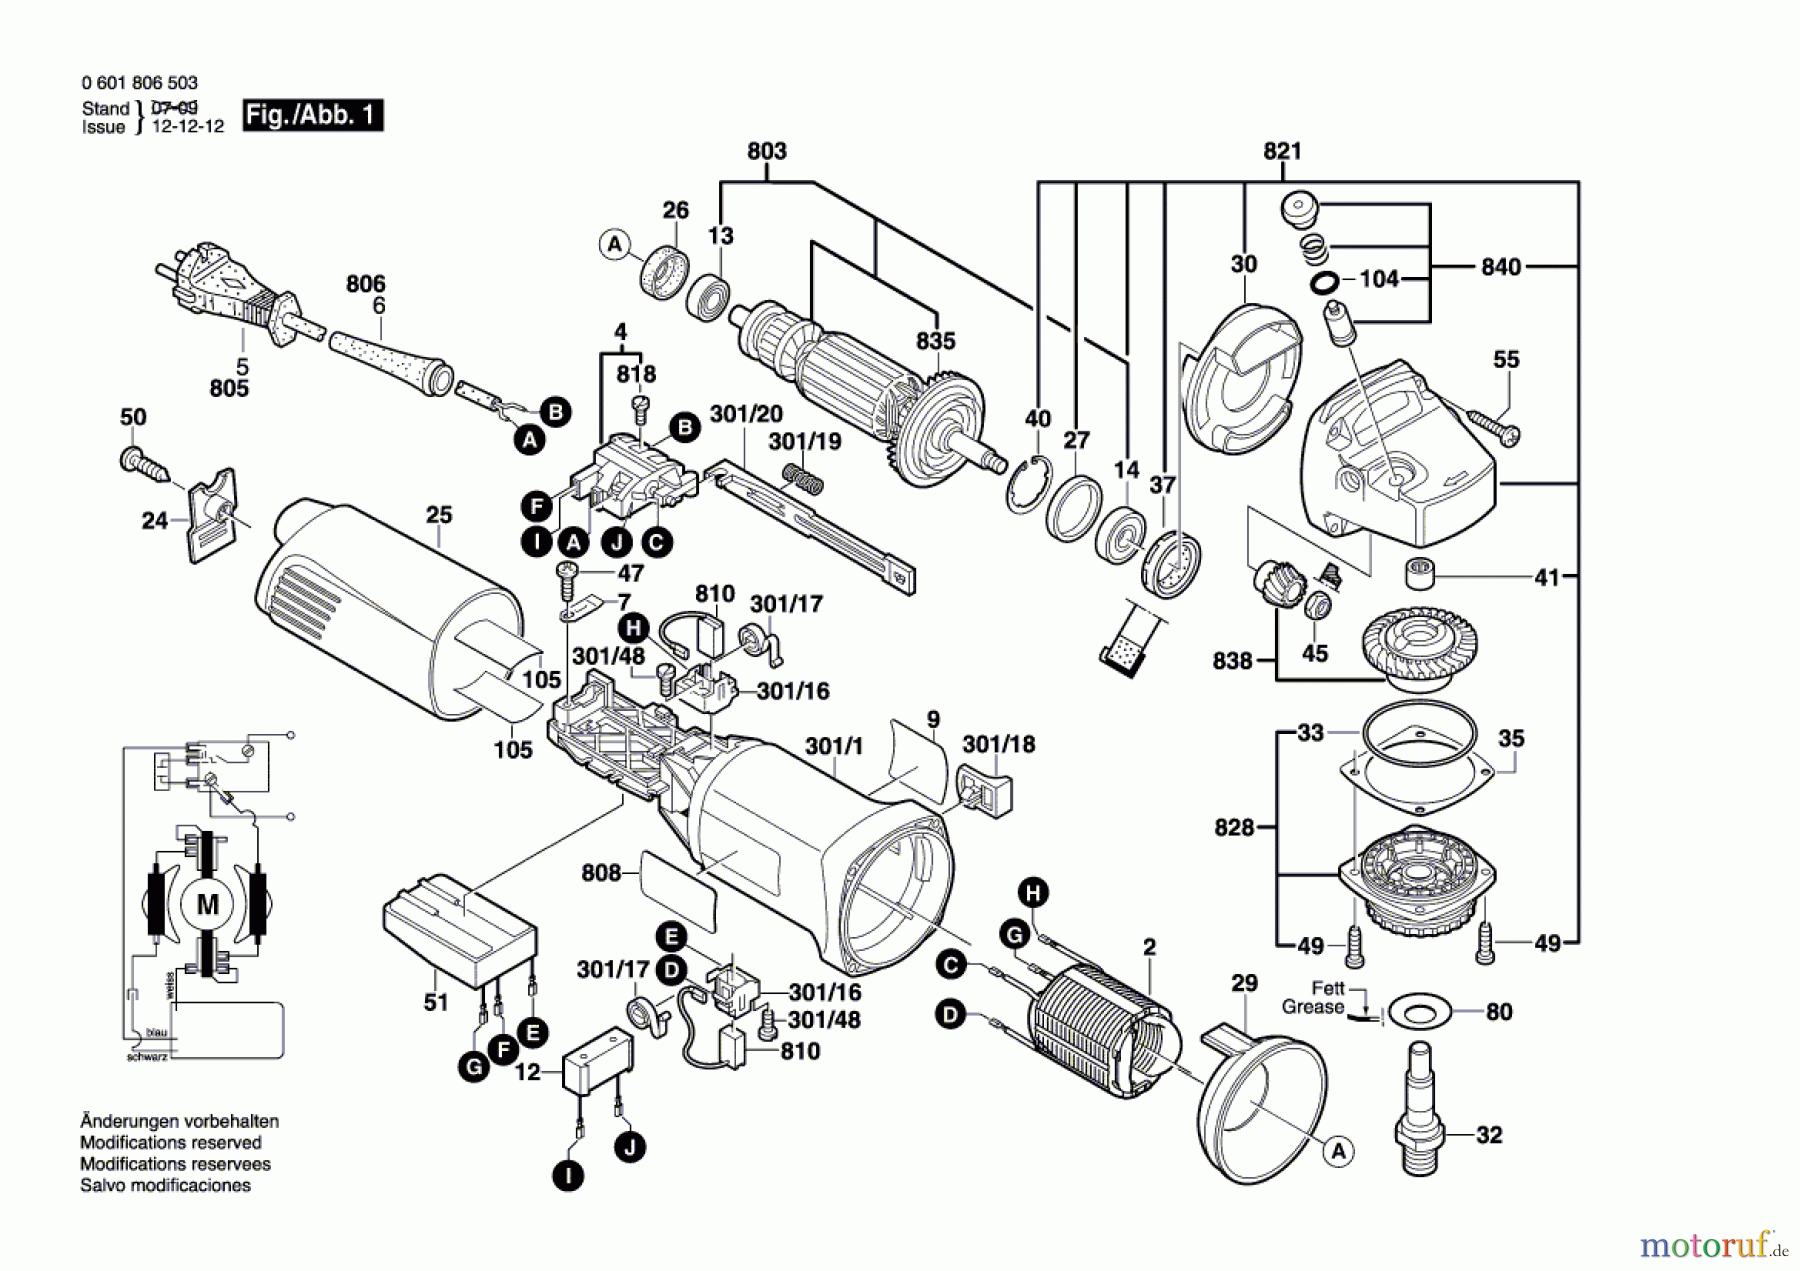  Bosch Werkzeug Winkelschleifer GWS 14-150C Seite 1